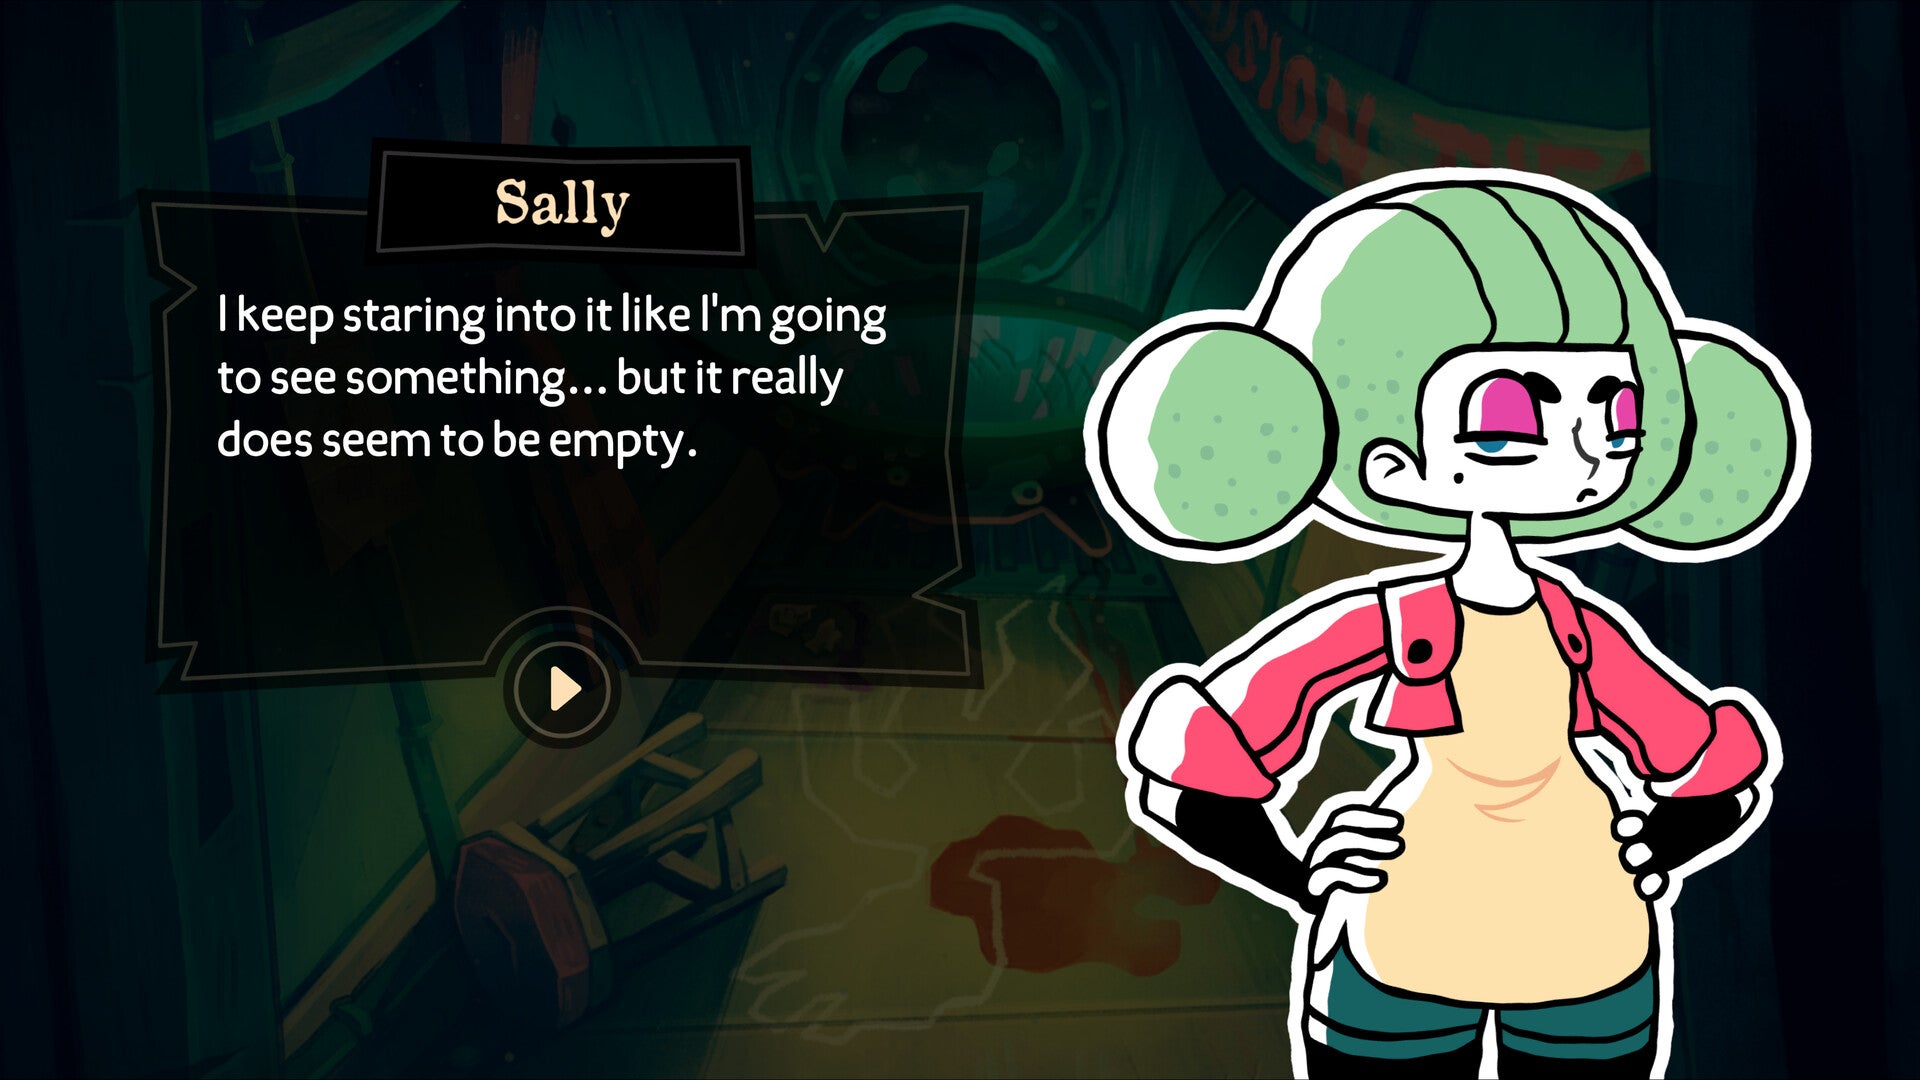 밝은 초록머리 캐릭터 Sally가 스크린샷 앞의 환경을 계속 응시할 수 있지만 아무것도 찾을 수 없다는 것을 말해줍니다. Sally와 그녀 옆의 텍스트 상자가 일러스트로 그려진 모습입니다.